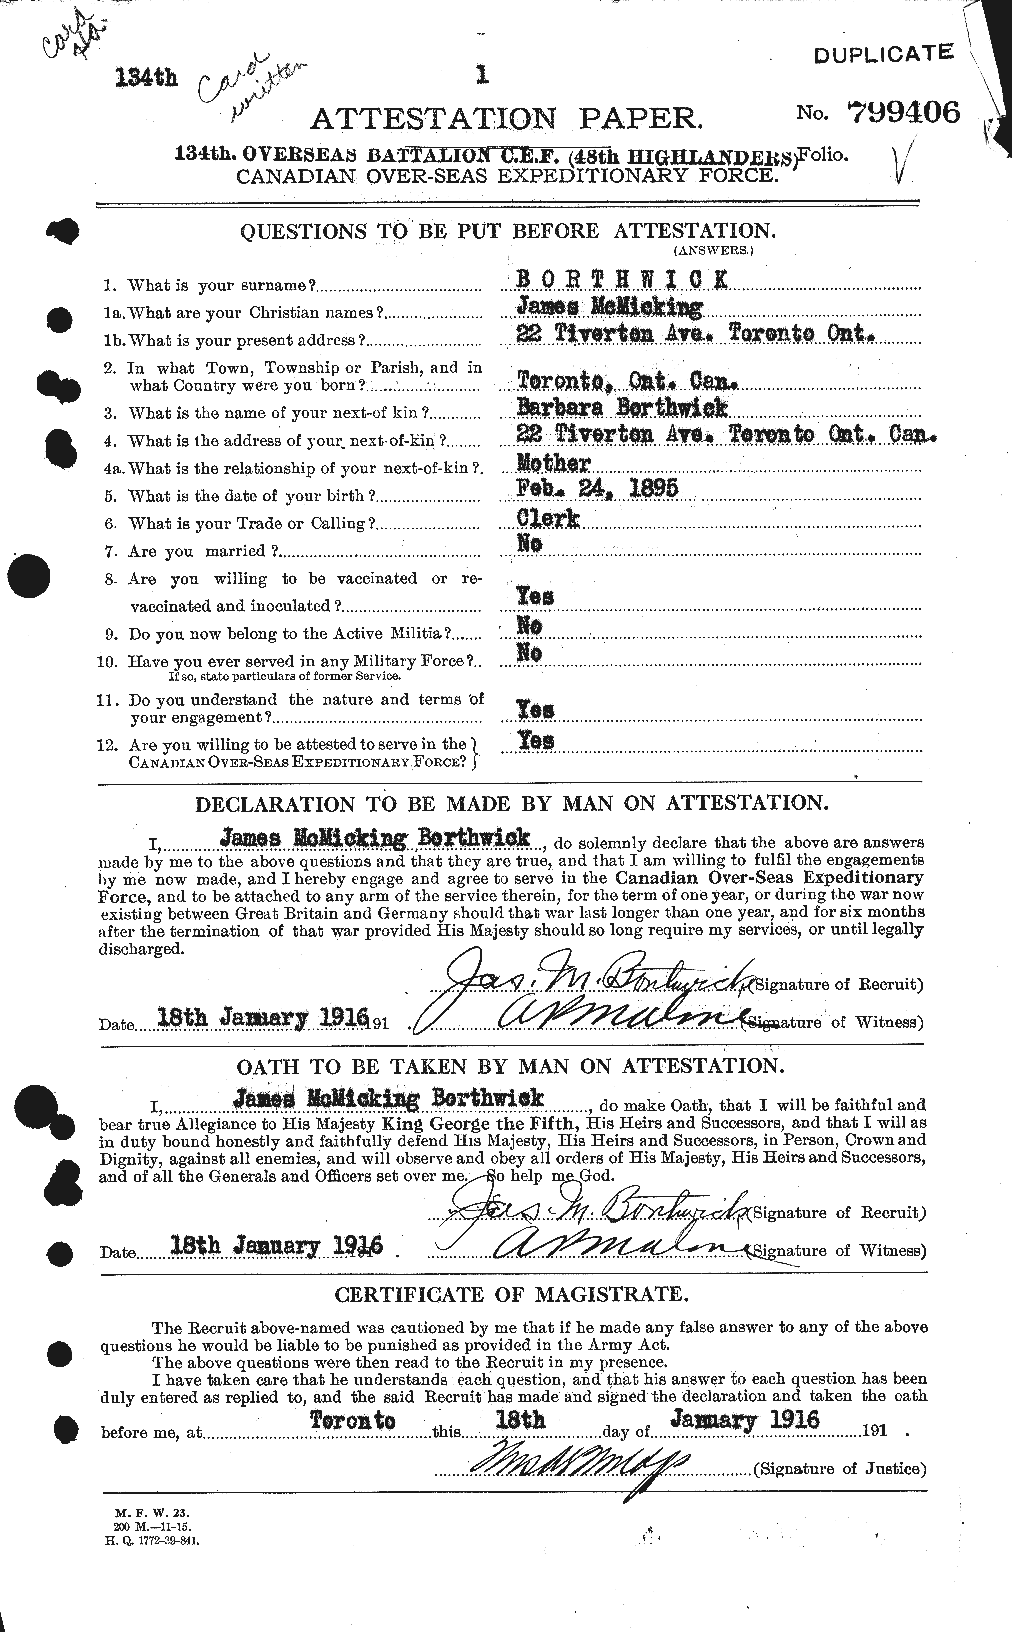 Dossiers du Personnel de la Première Guerre mondiale - CEC 253503a